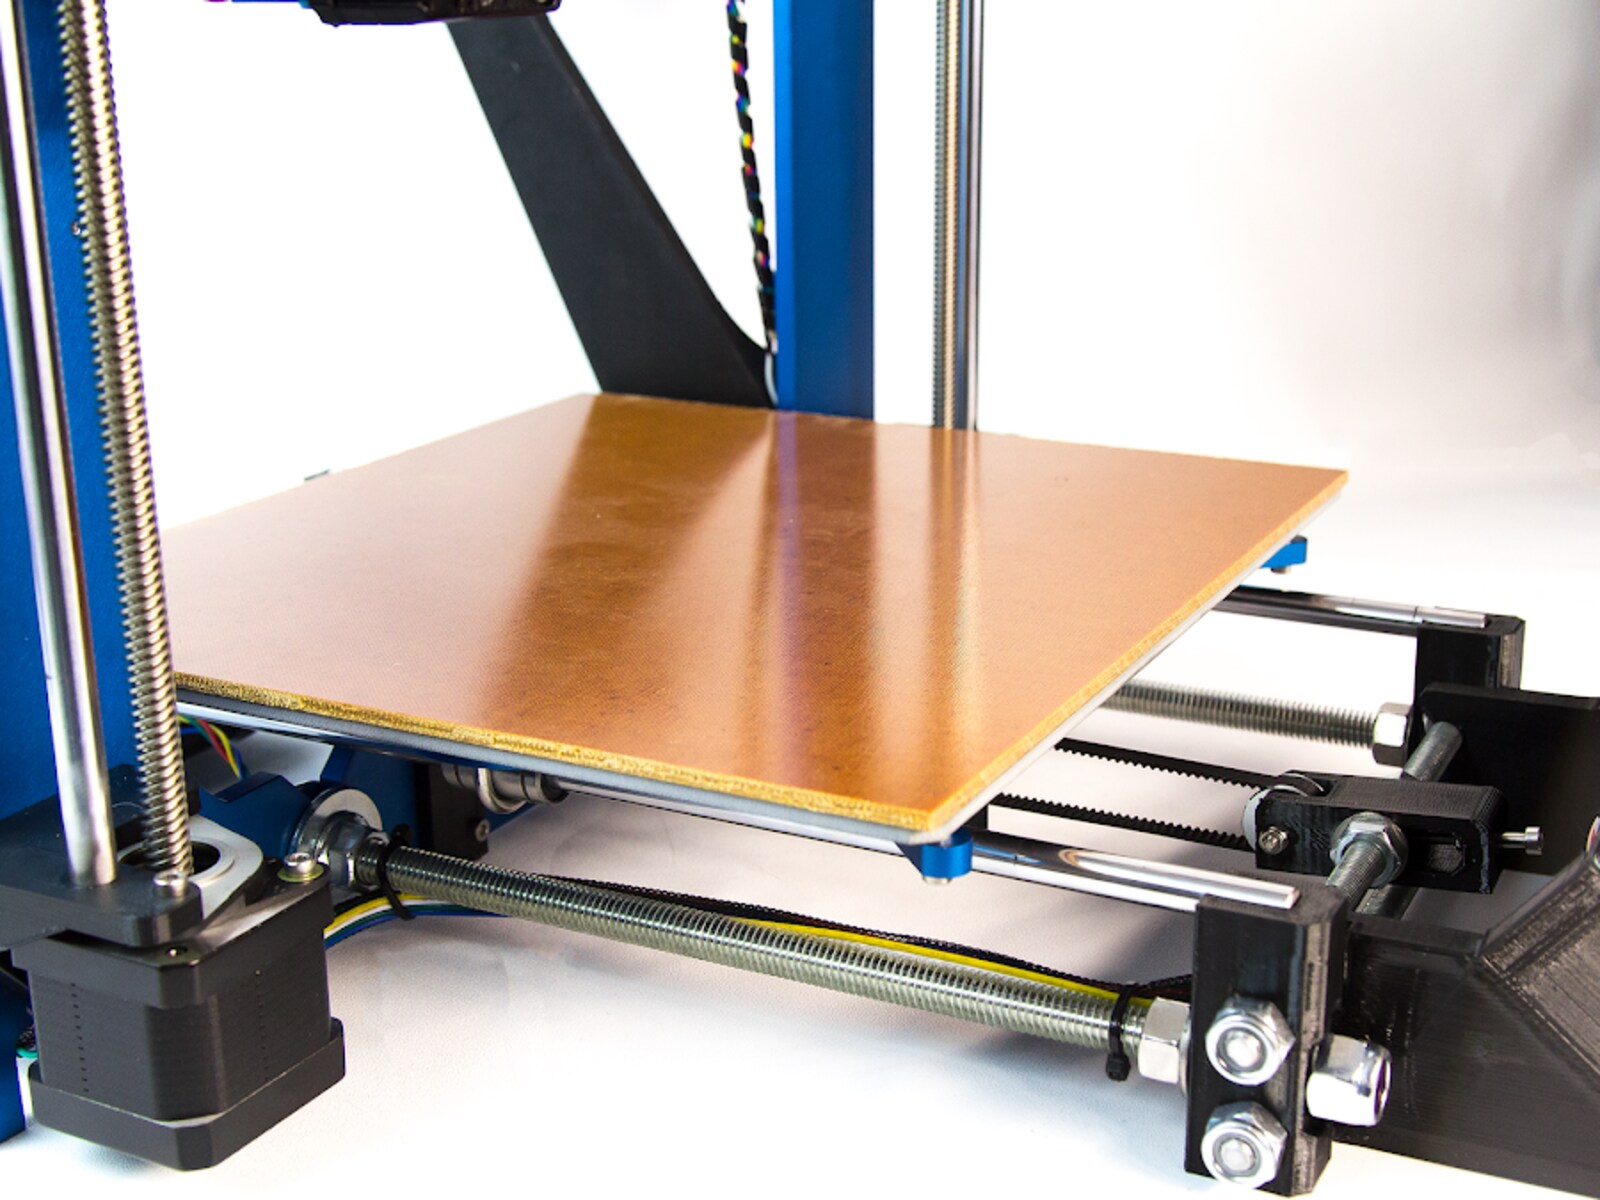 How Hot Should A 3D Printer Bed Be